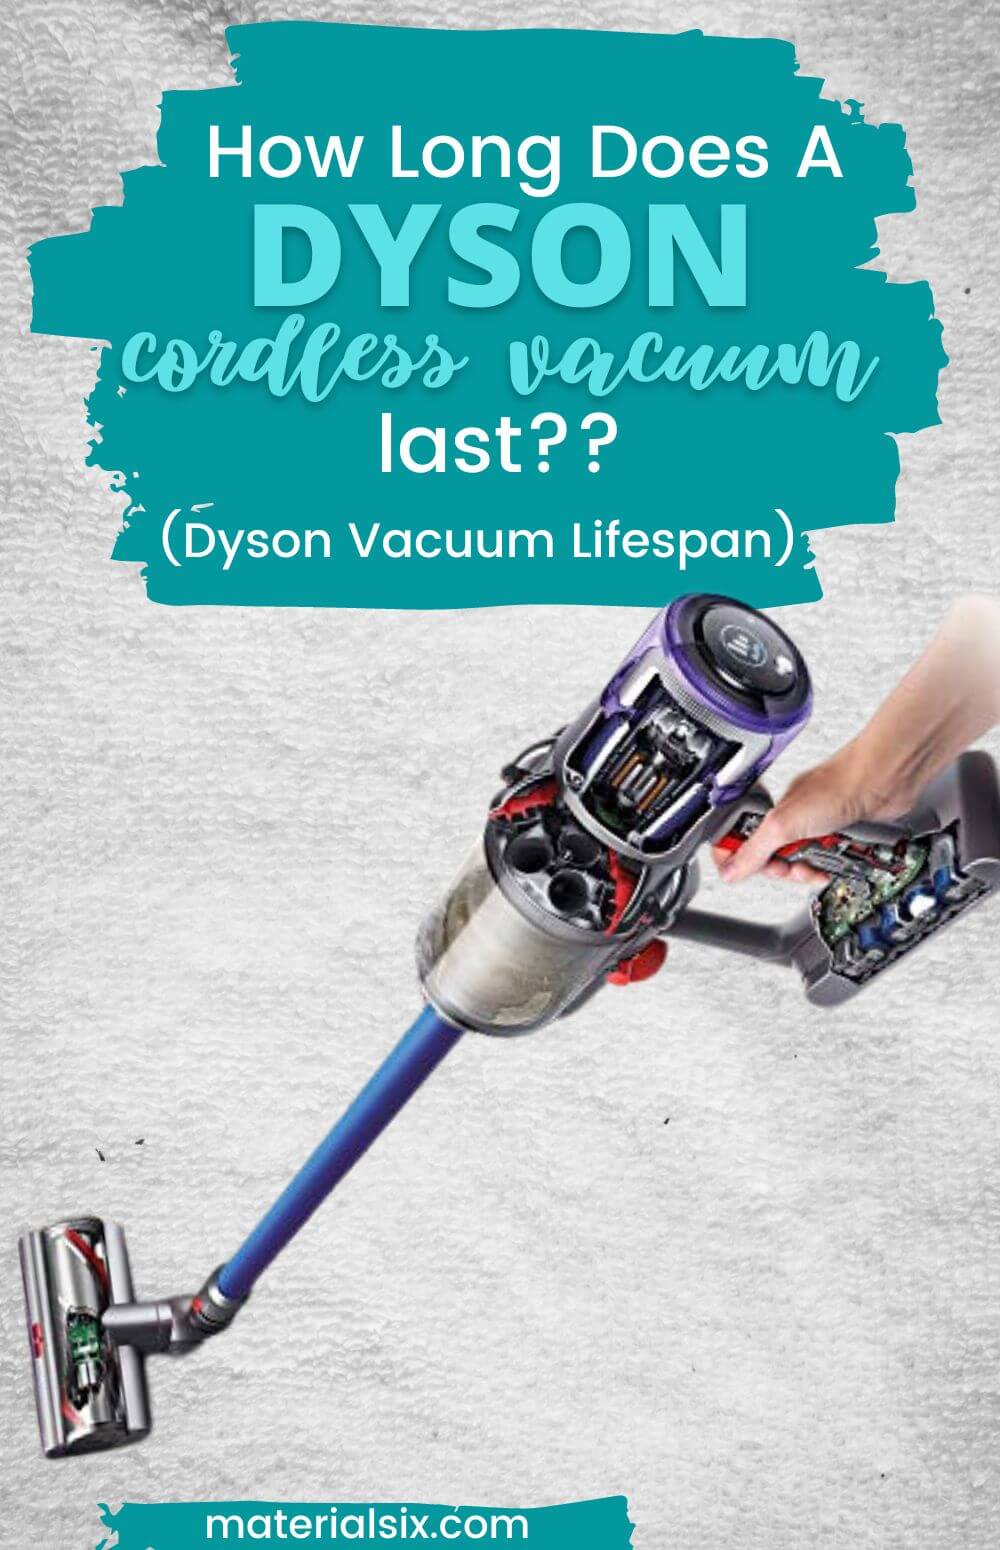 How long does a Dyson Cordless Vacuum Last - Dyson Vacuum Lifespan